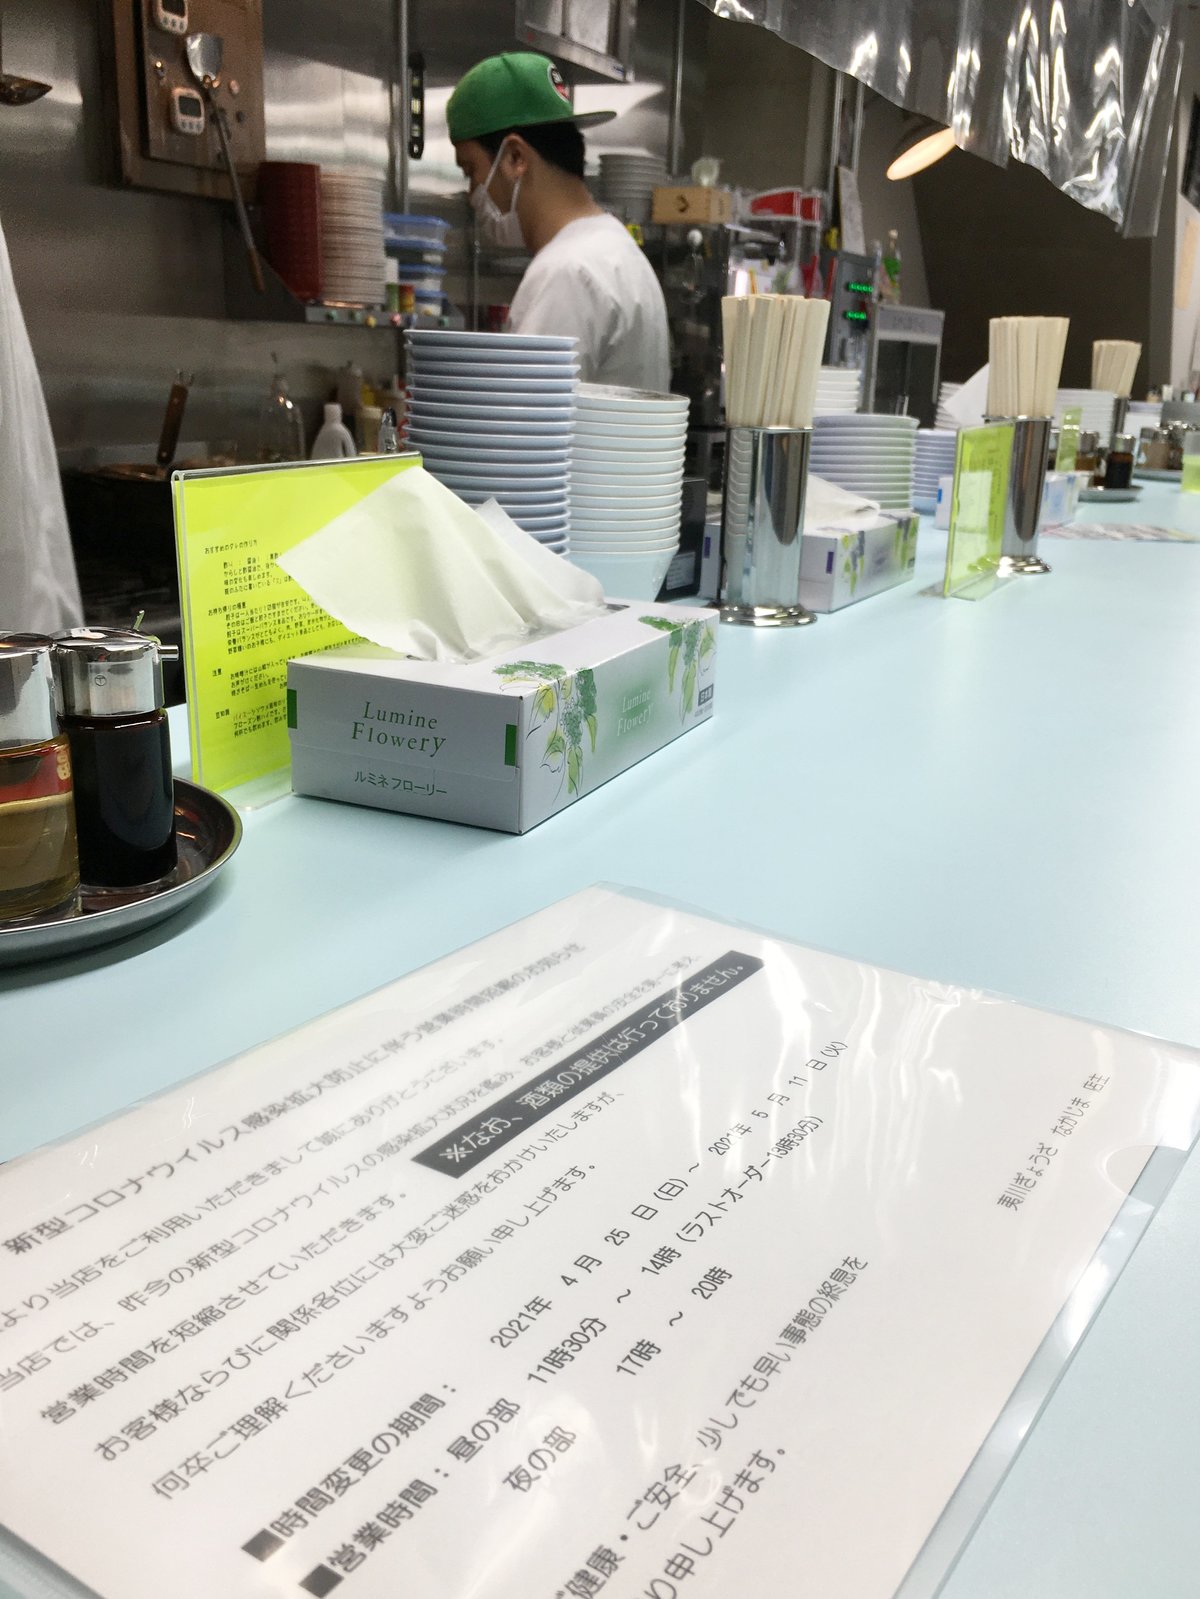 酒が出ないと分かると帰る客も 酒類提供を中止の飲食店 封じられた 武器 医療 コロナ 地域のニュース 京都新聞